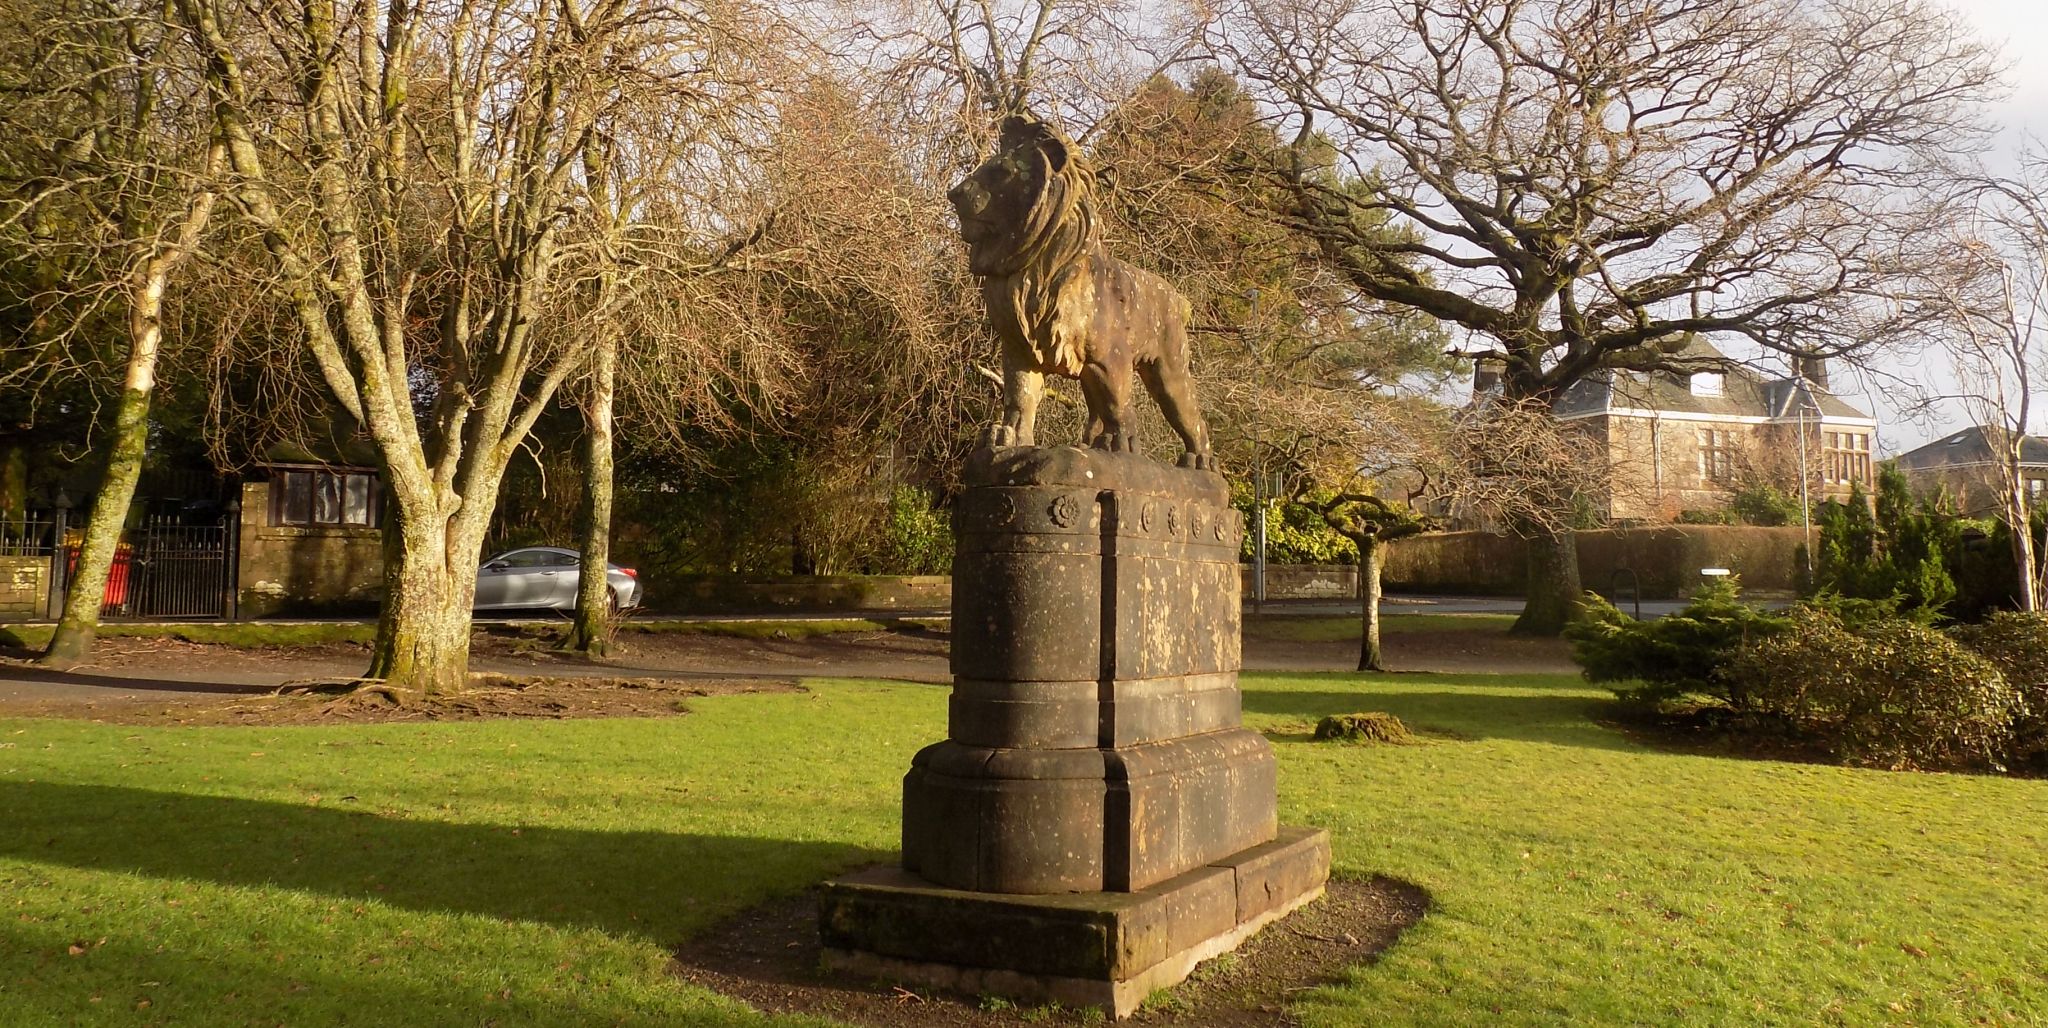 Lion statue in Birkmyre Park in Kilmacolm